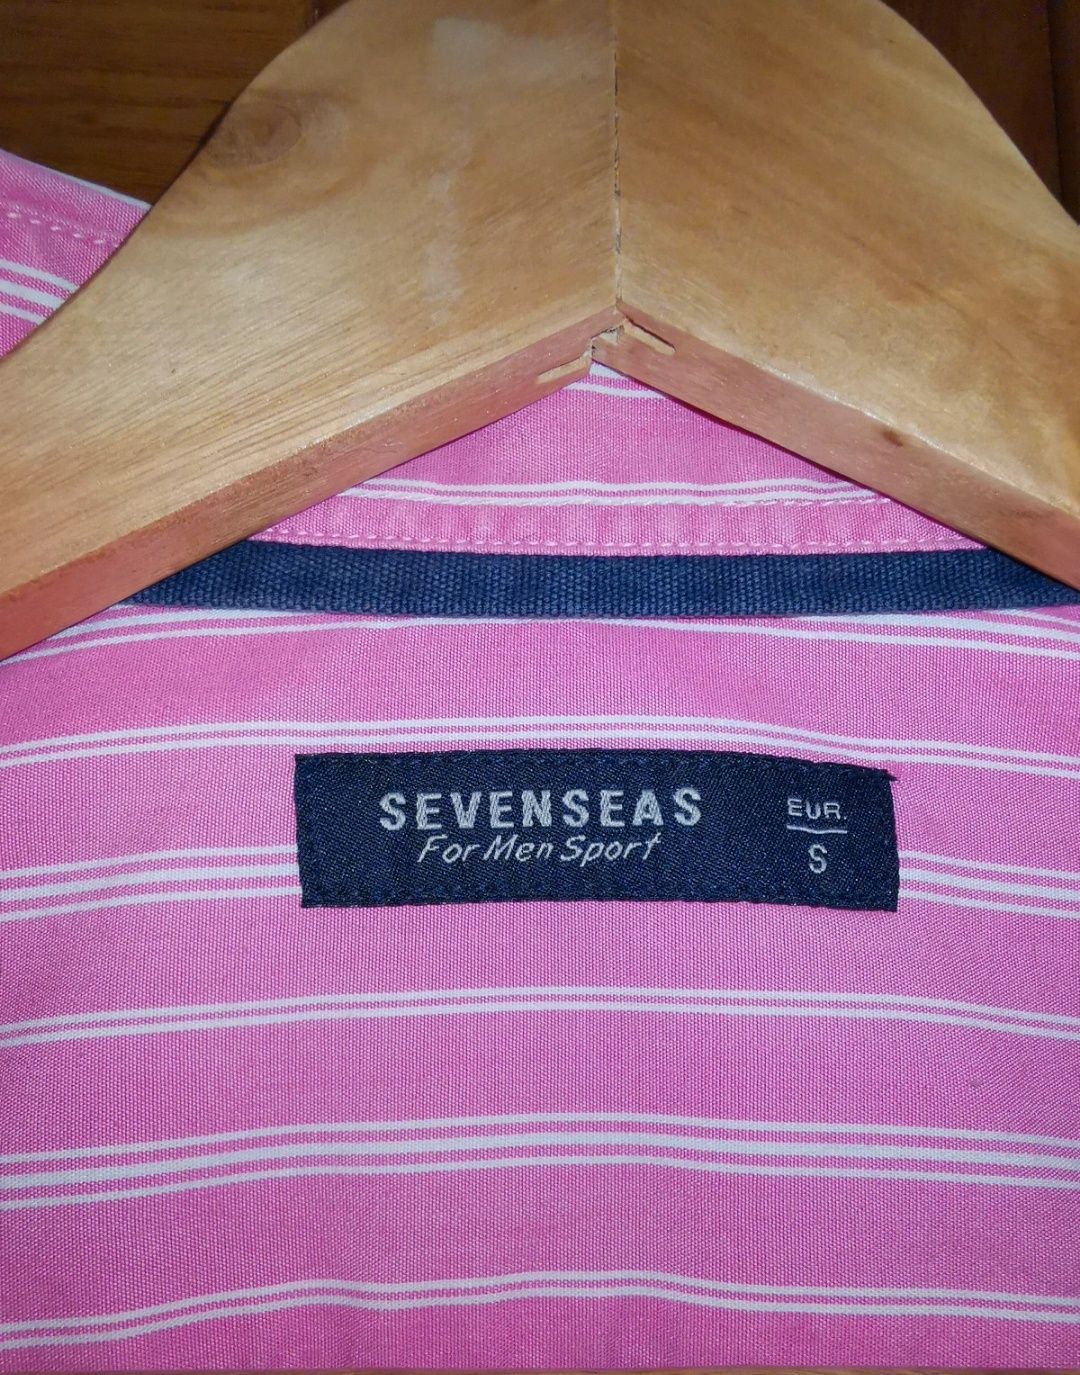 Camisa Sevenseas - For Men Sport